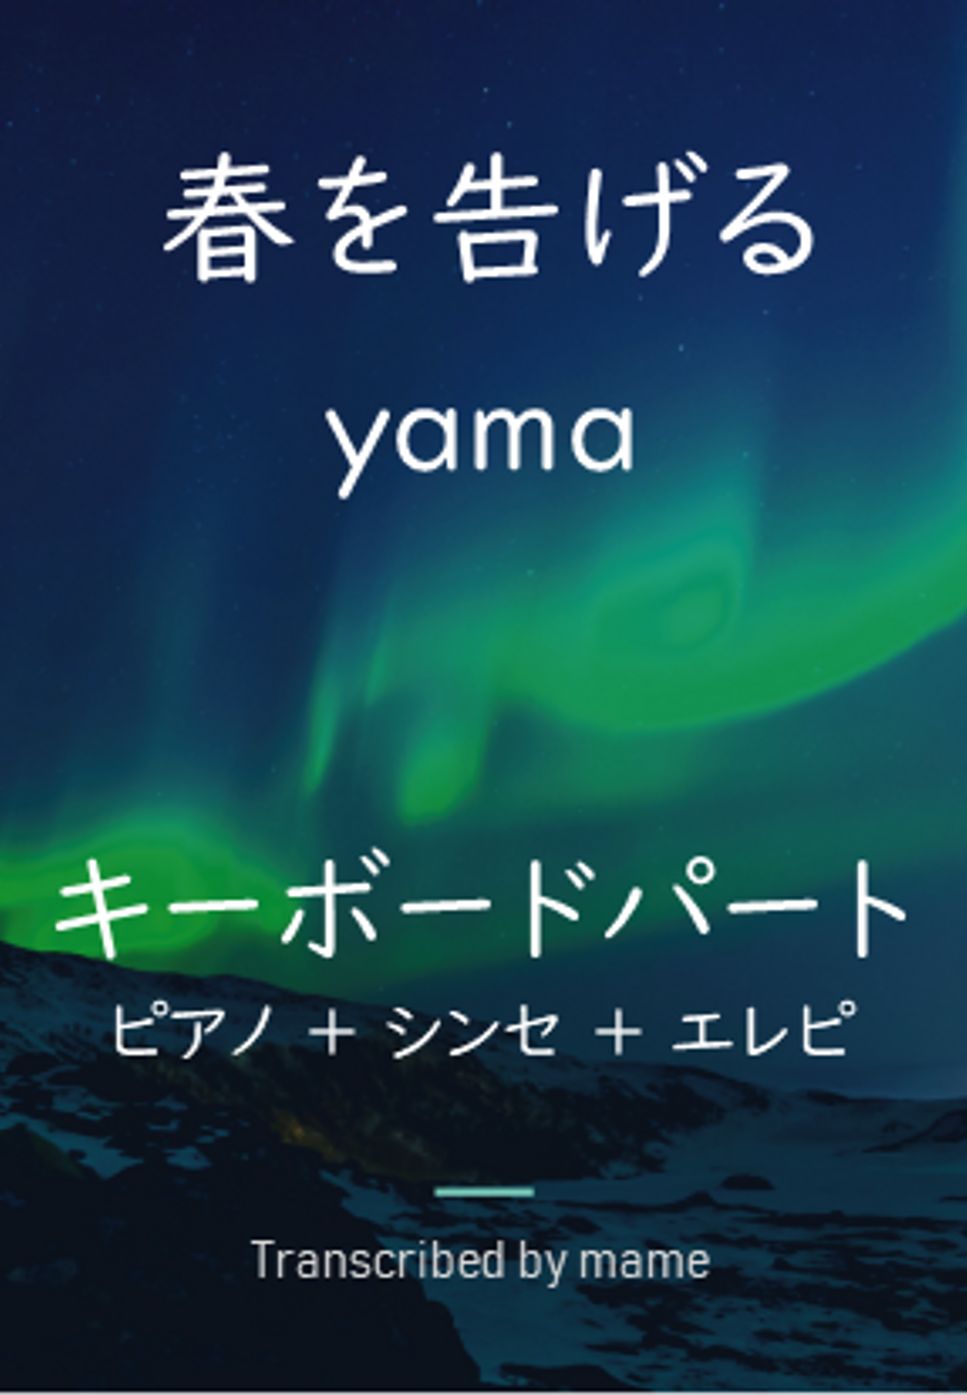 yama - 春を告げる (ピアノ、シンセ、エレピパート) by mame